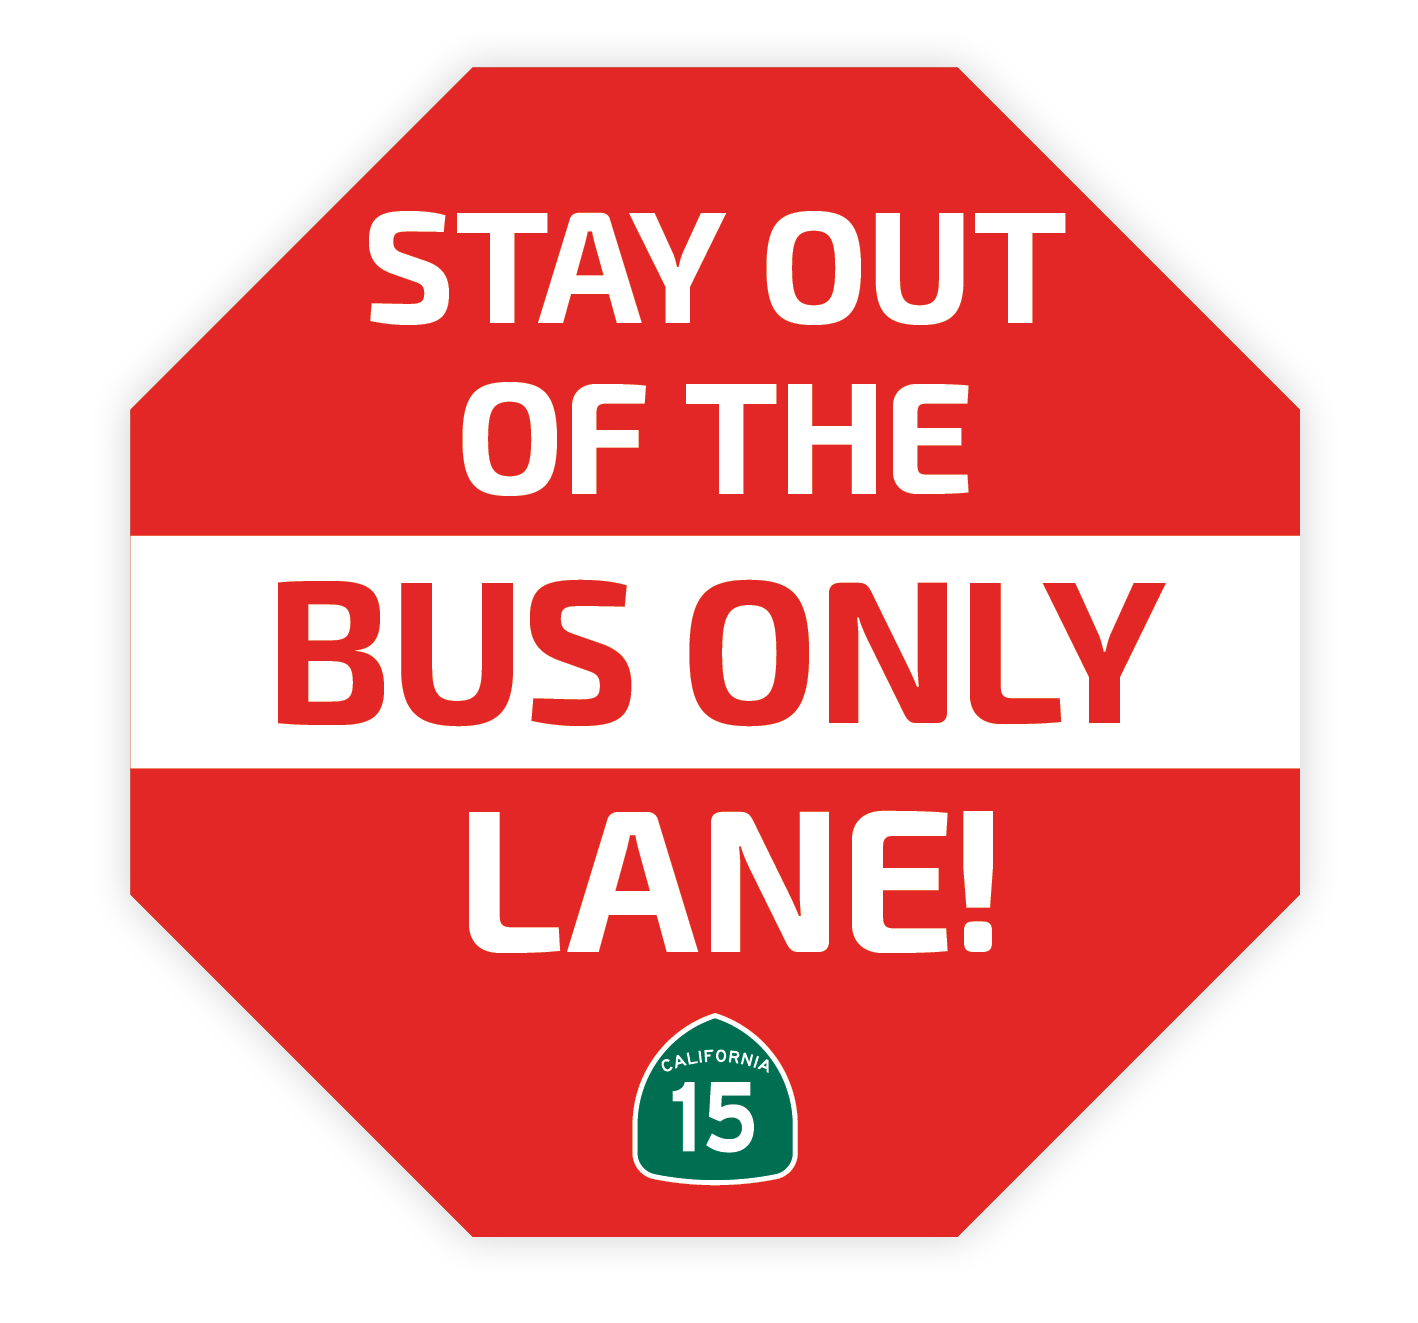 Bus Only Lane